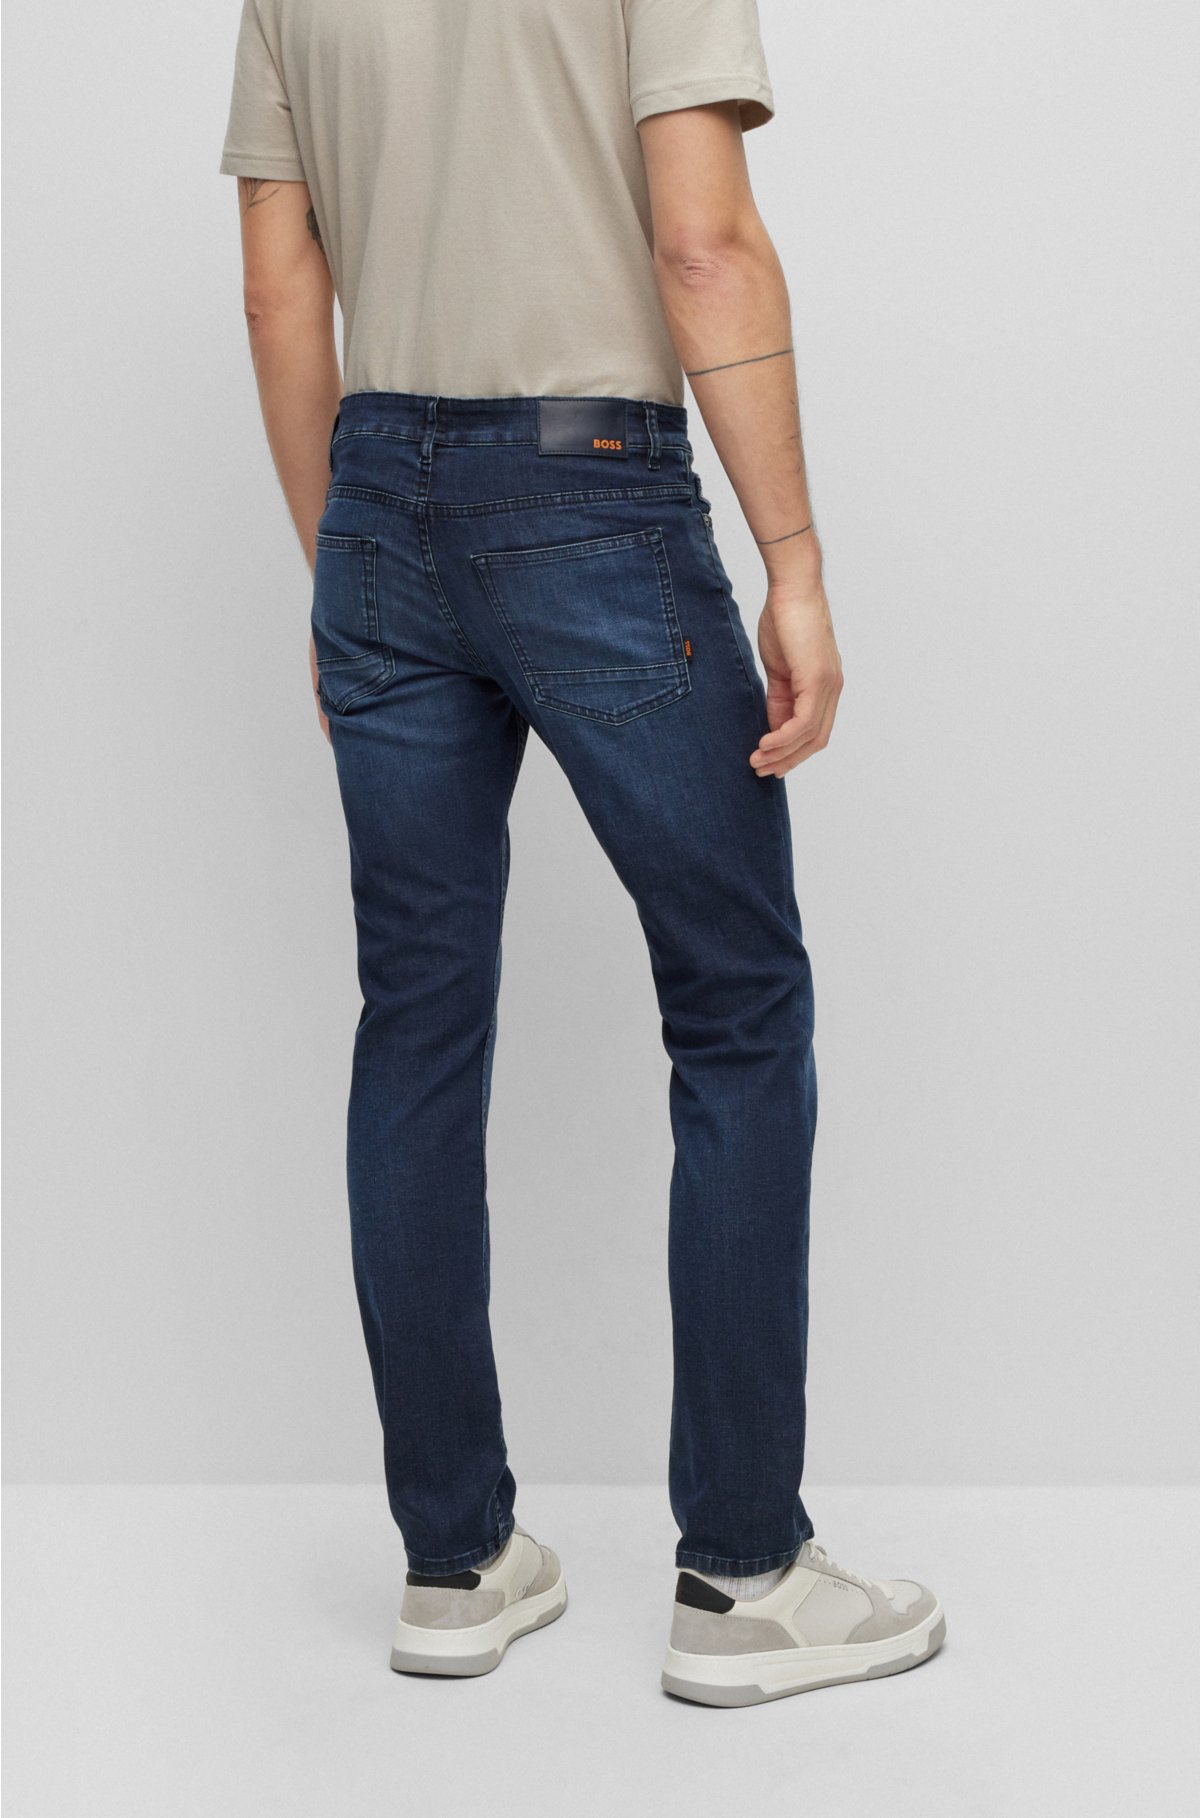 denim - Slim-fit in BOSS super-stretch blue jeans